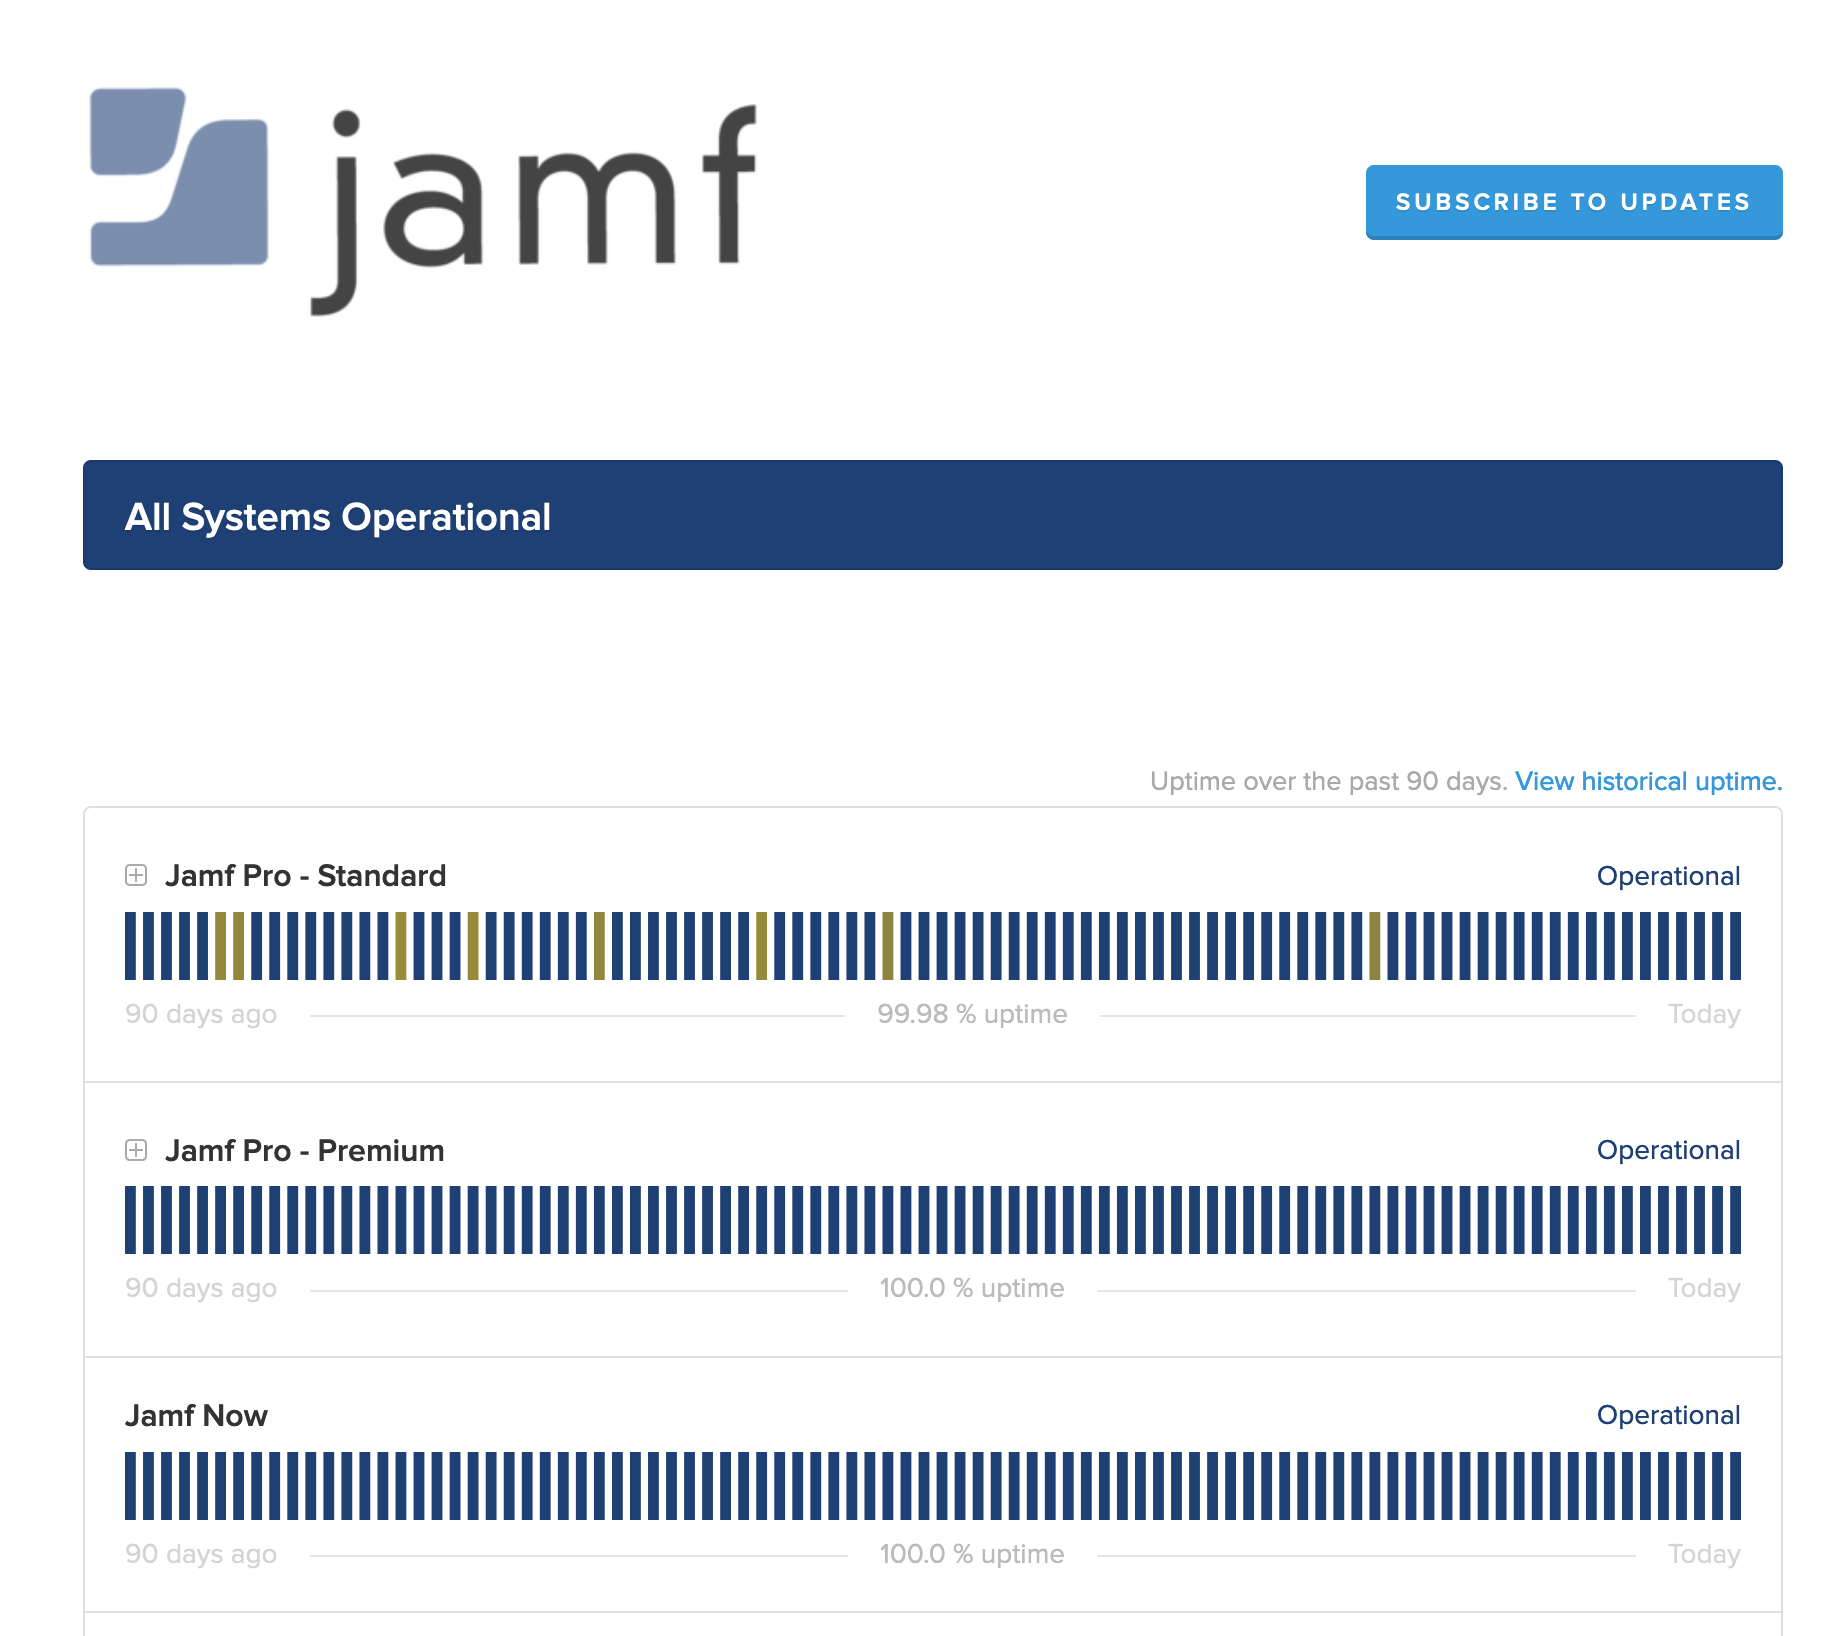 Captura de pantalla con el logotipo de Jamf y los estados de todos los sistemas que están operativos, además de un botón para suscribirse a las novedades.